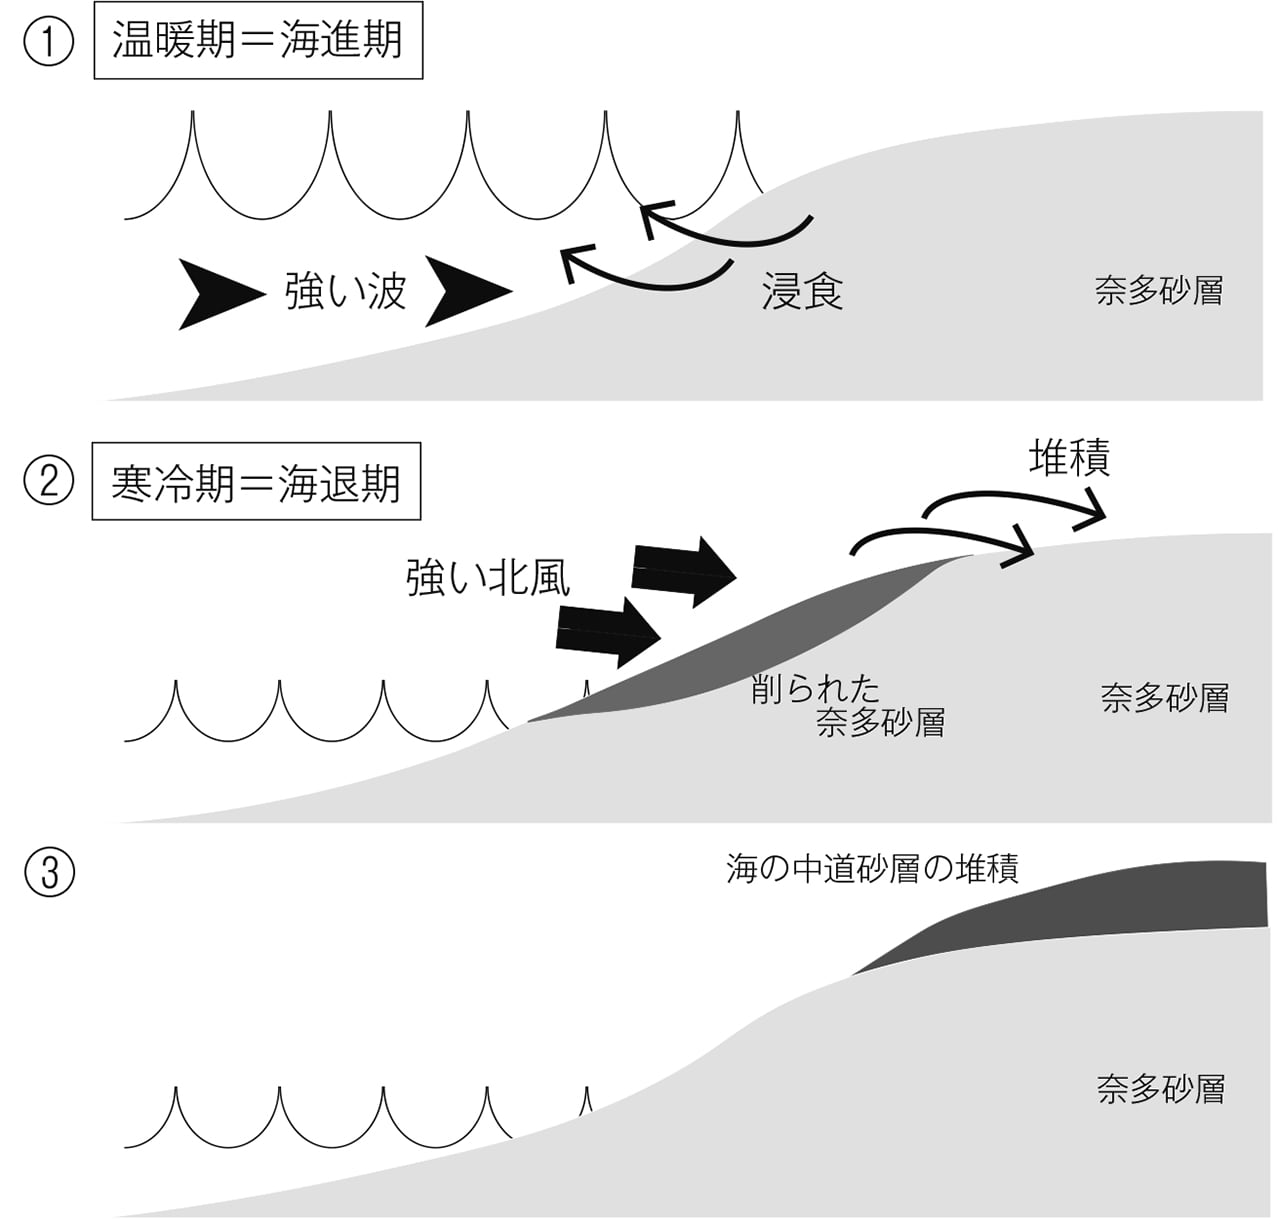 図2 奈多砂層の浸食による海の中道砂層の堆積